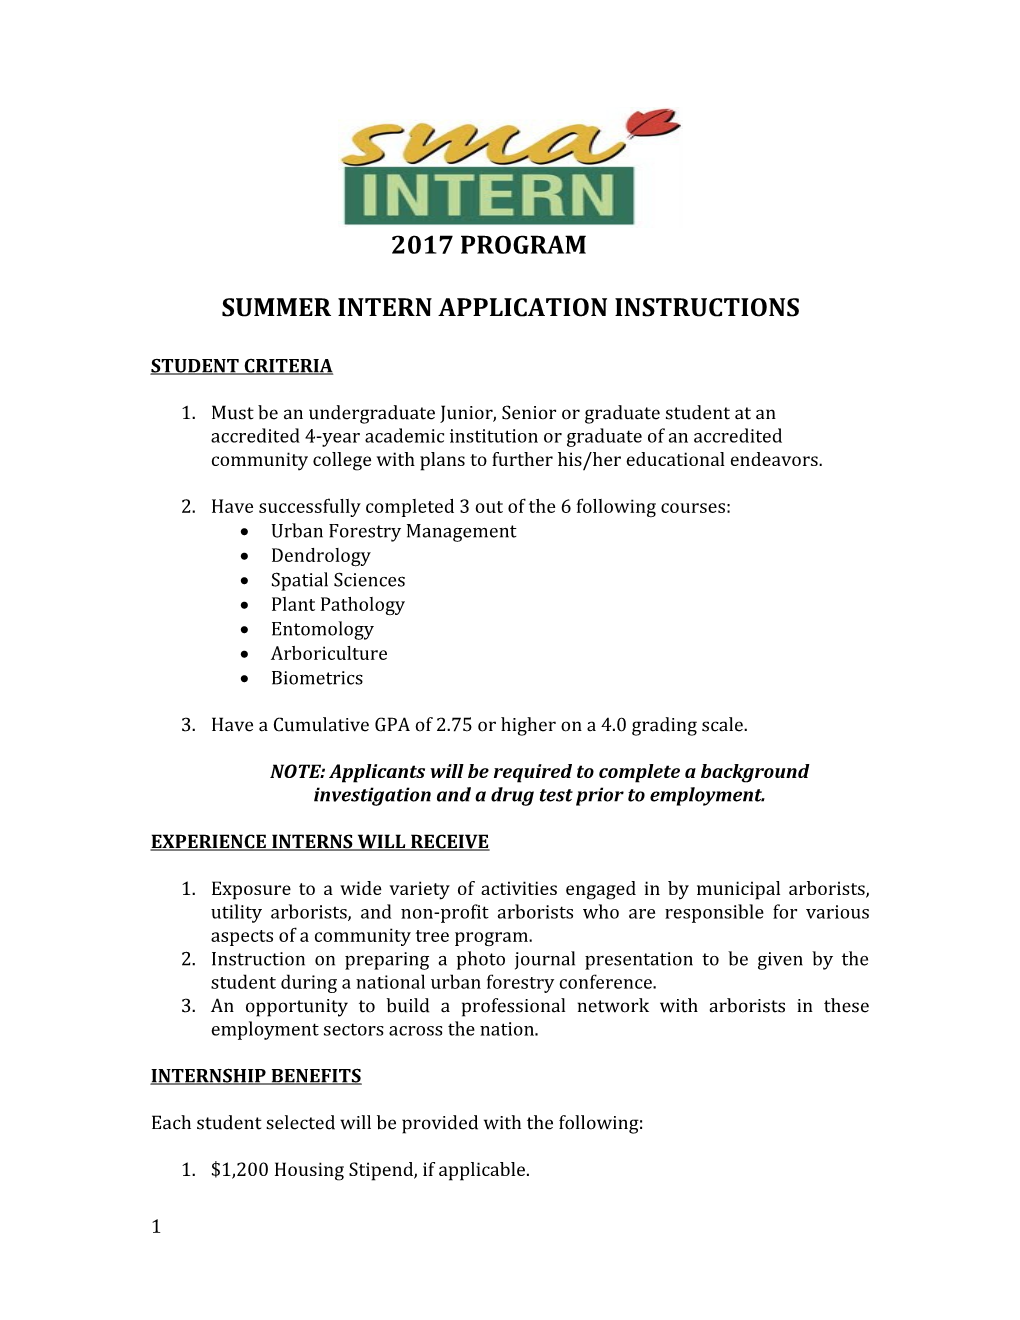 Summer Intern Application Instructions